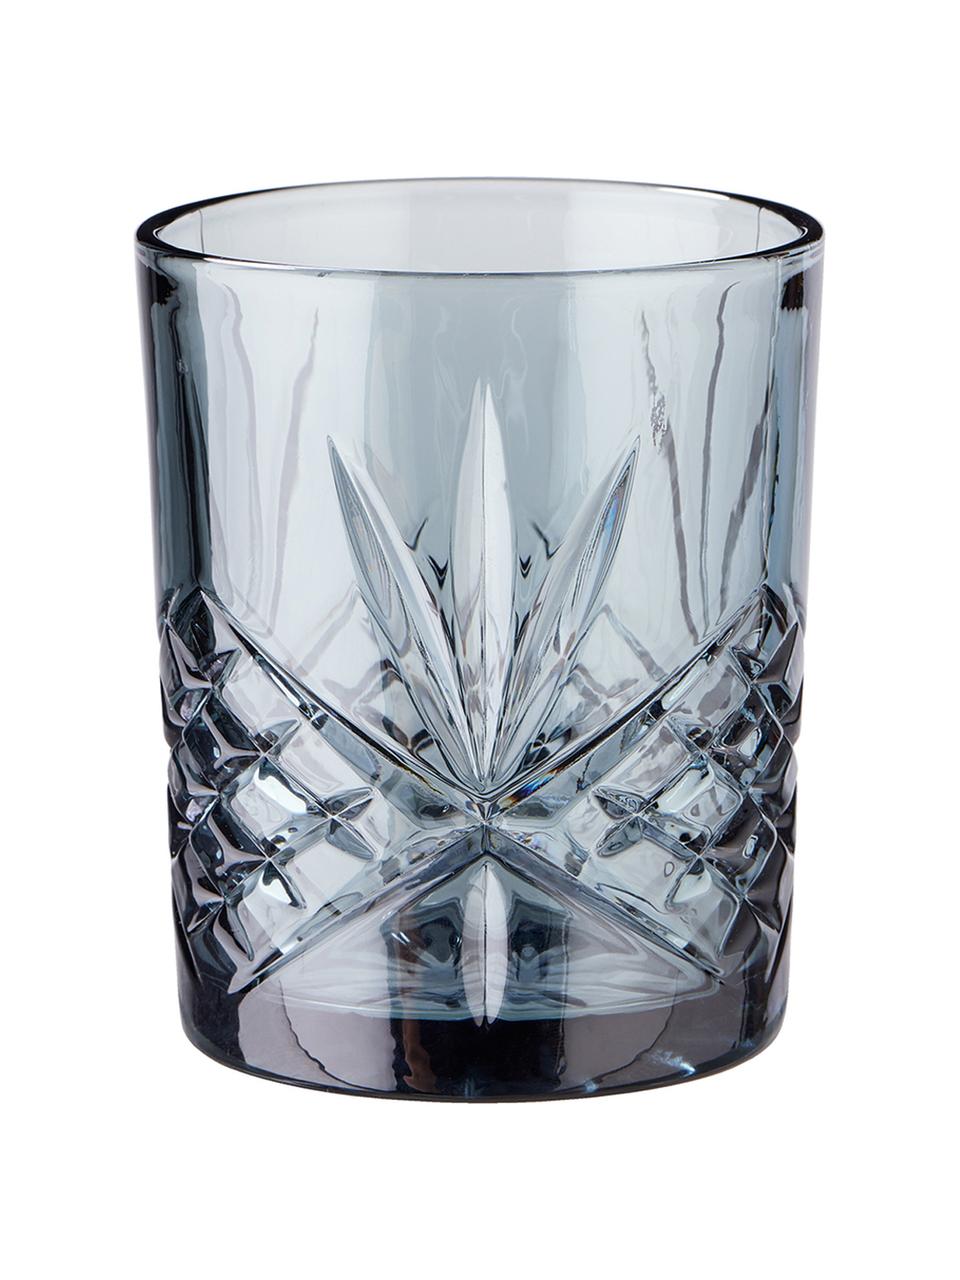 Sada sklenic s reliéfním vzorem Crystal, 4 díly, Sklo, Šedá, Ø 8 cm, V 10 cm, 300 ml